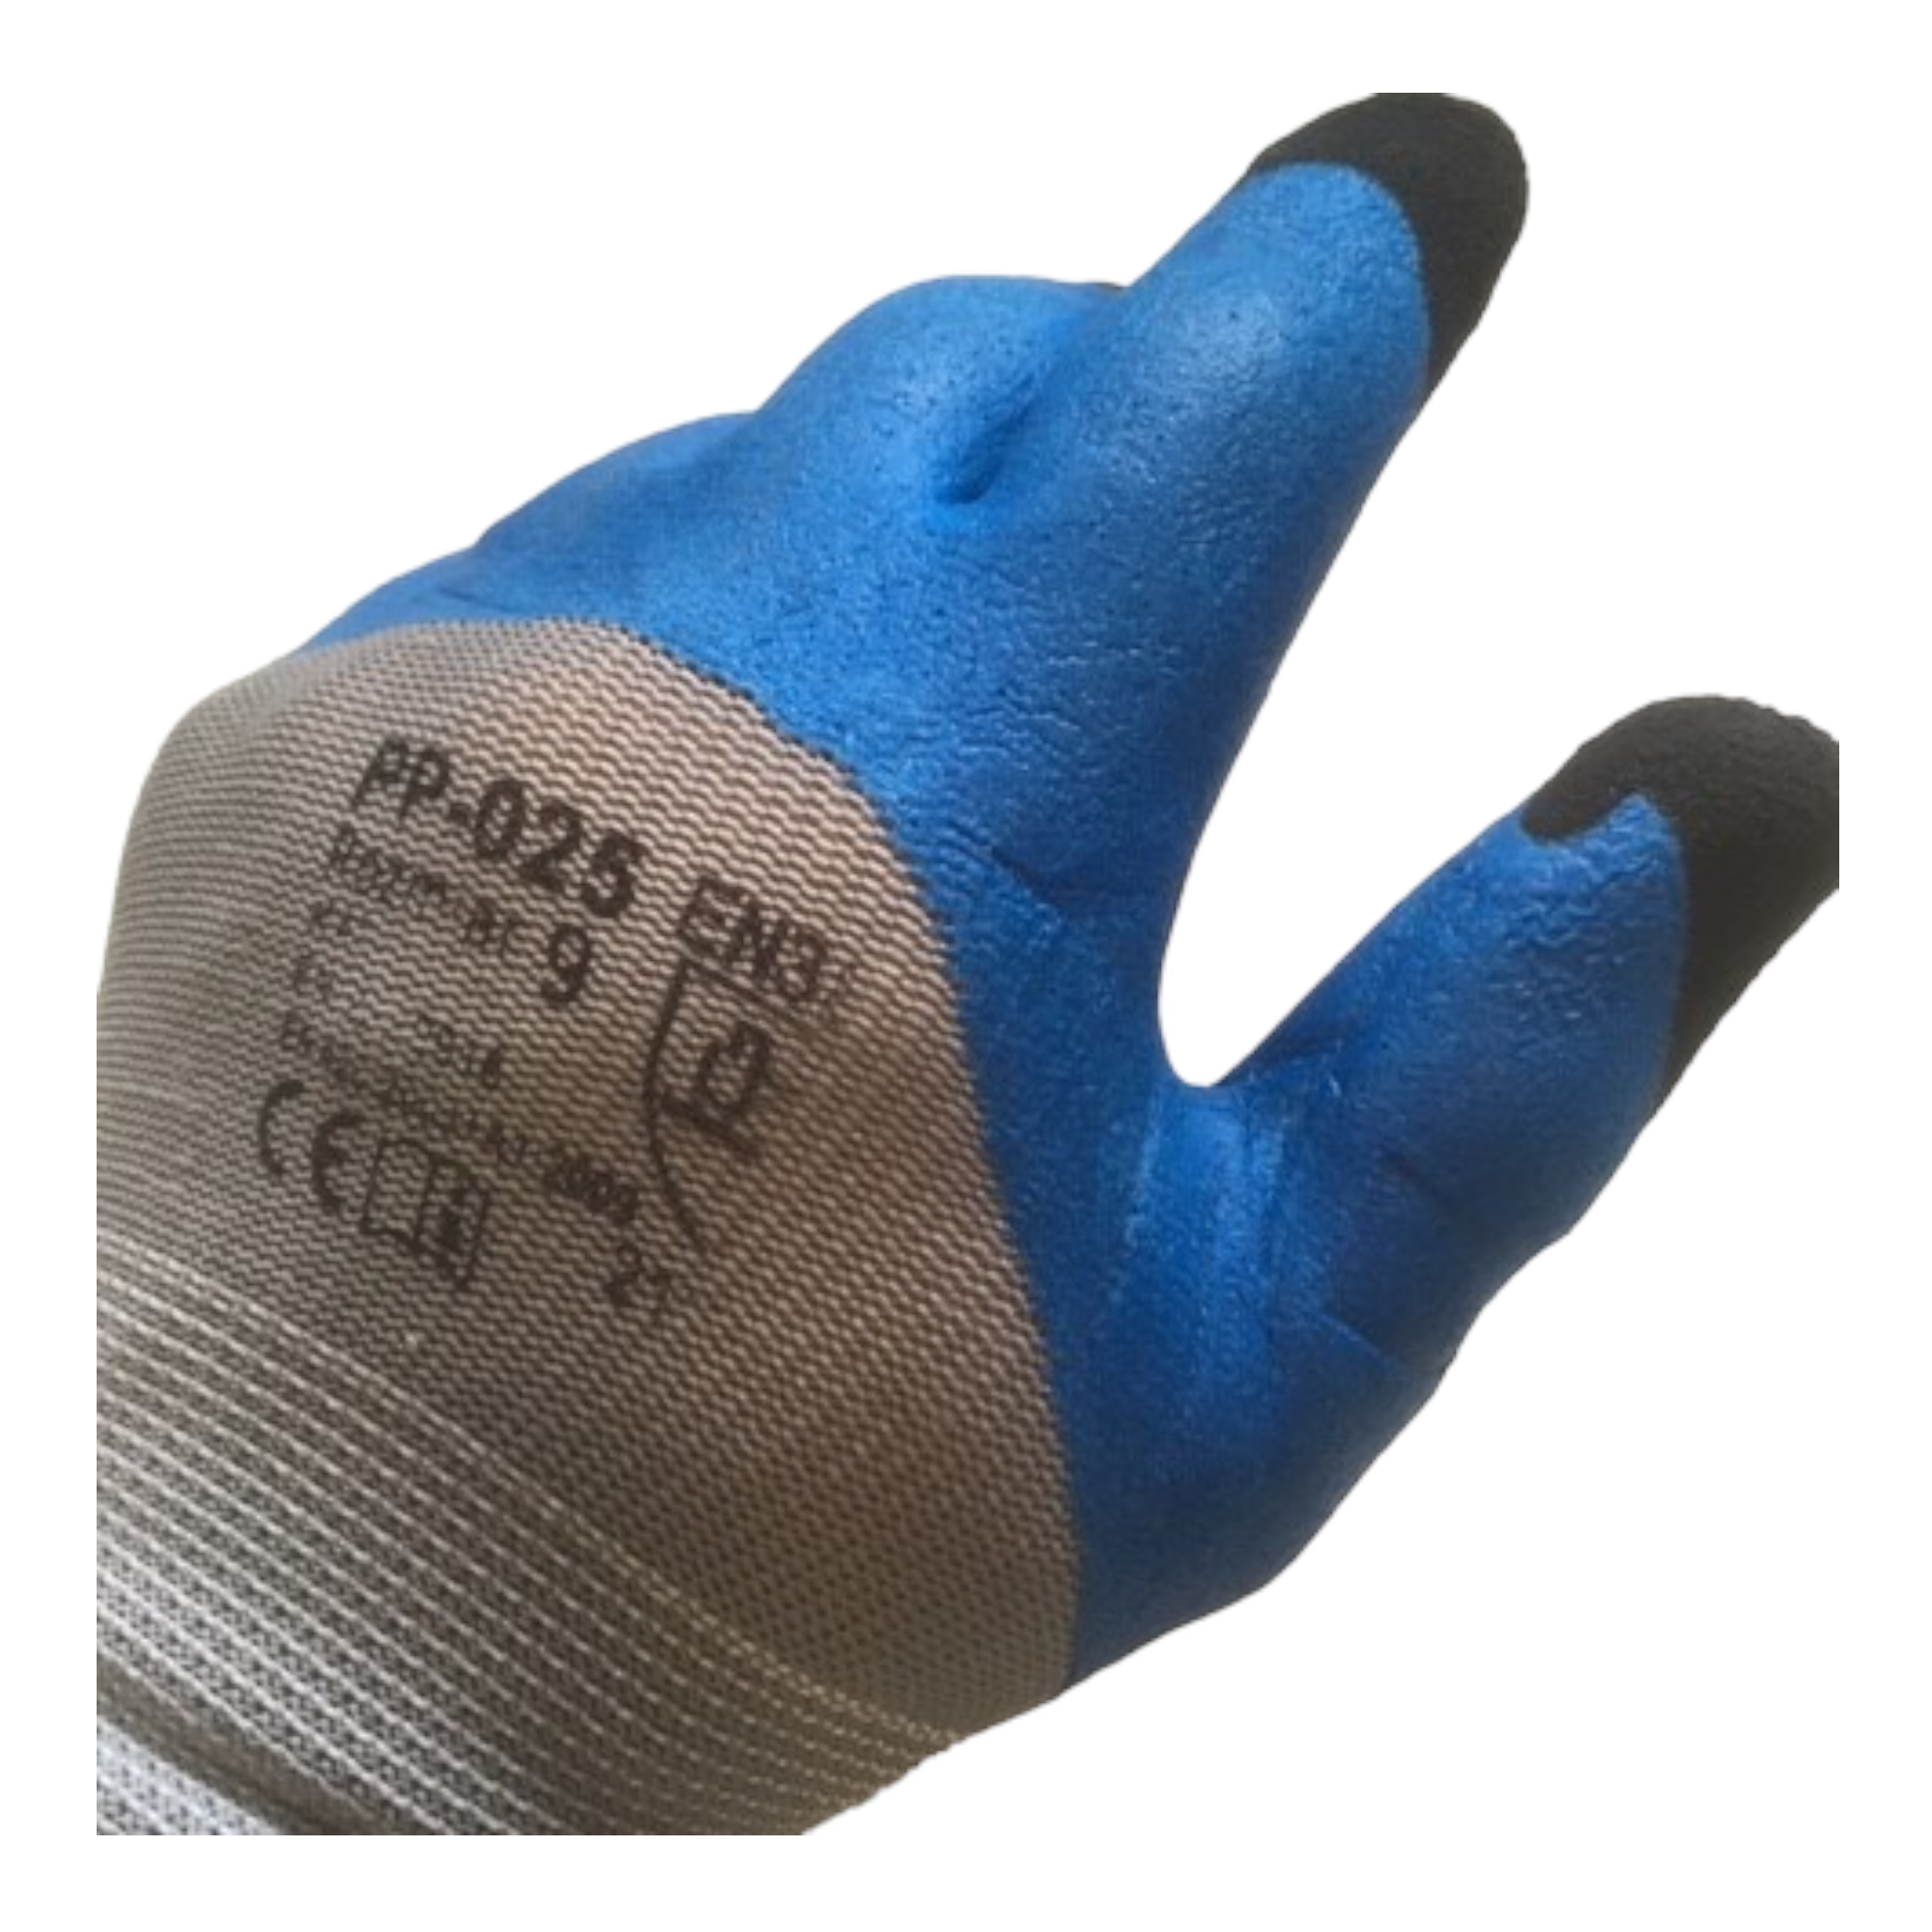 K033 Flex, Latexschaum mit Textilbundchen, blau mit grauen Handrücken Gr. 9